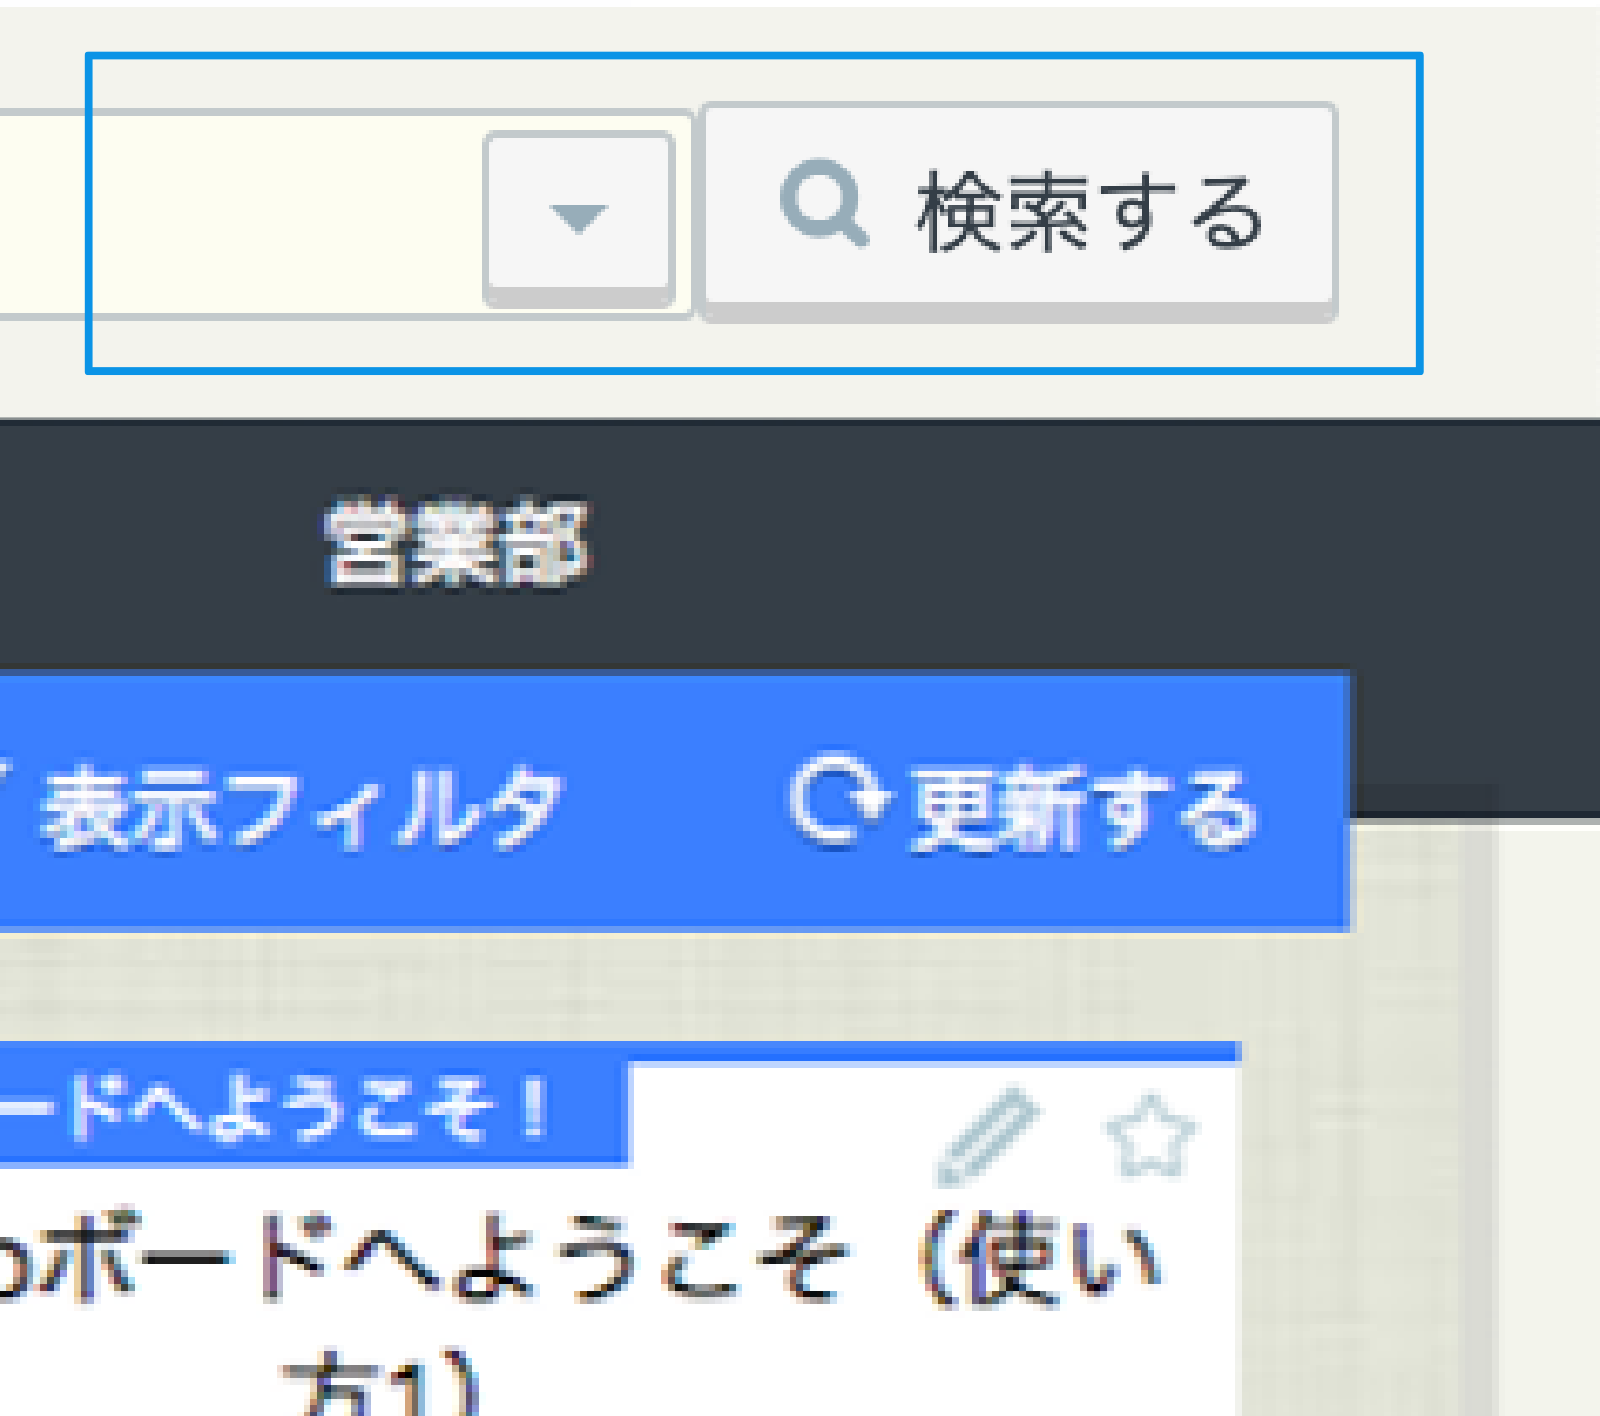 rakumo ボード 検索画面